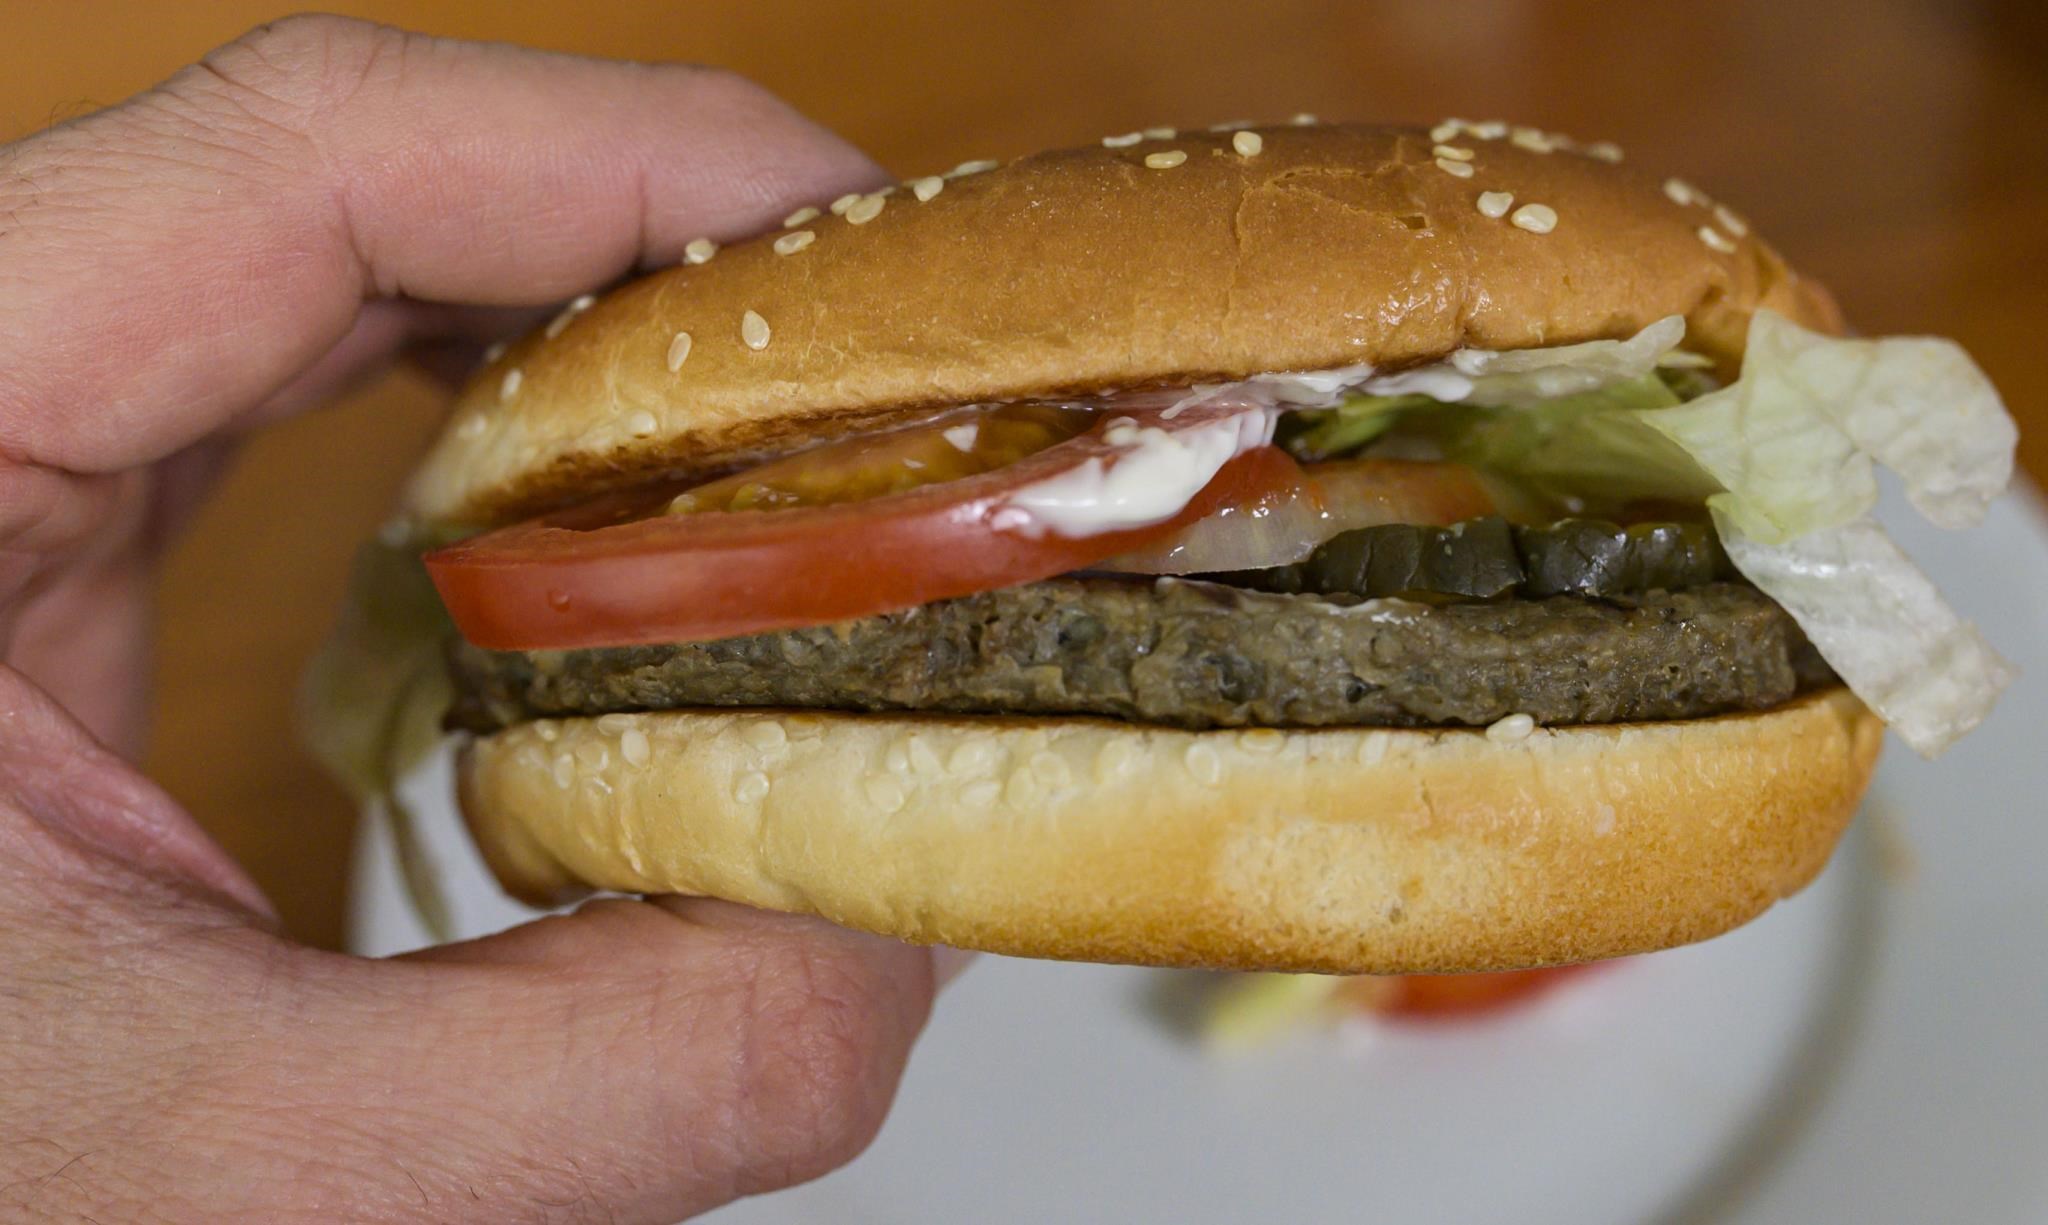 La acción: Burger King fue demandada porque la carne del embutido no era lo suficientemente grande